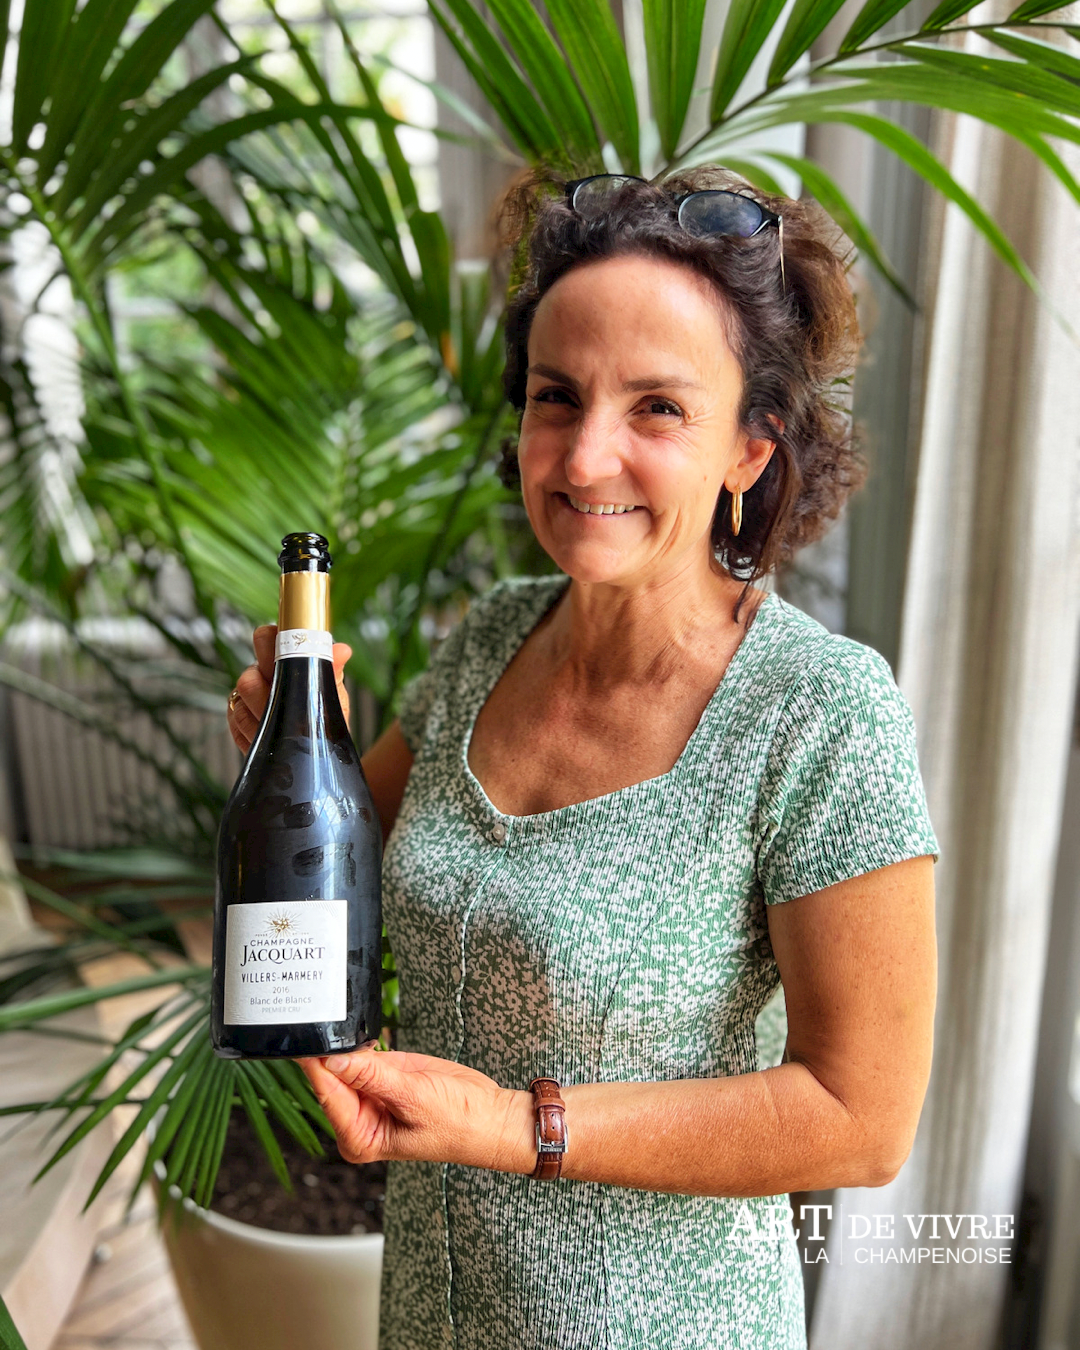 Champagne Jacquart : un nouveau carré dans la mozaique de la gamme, le Villers-Marmery 2016 pour un village, un cépage, une année !